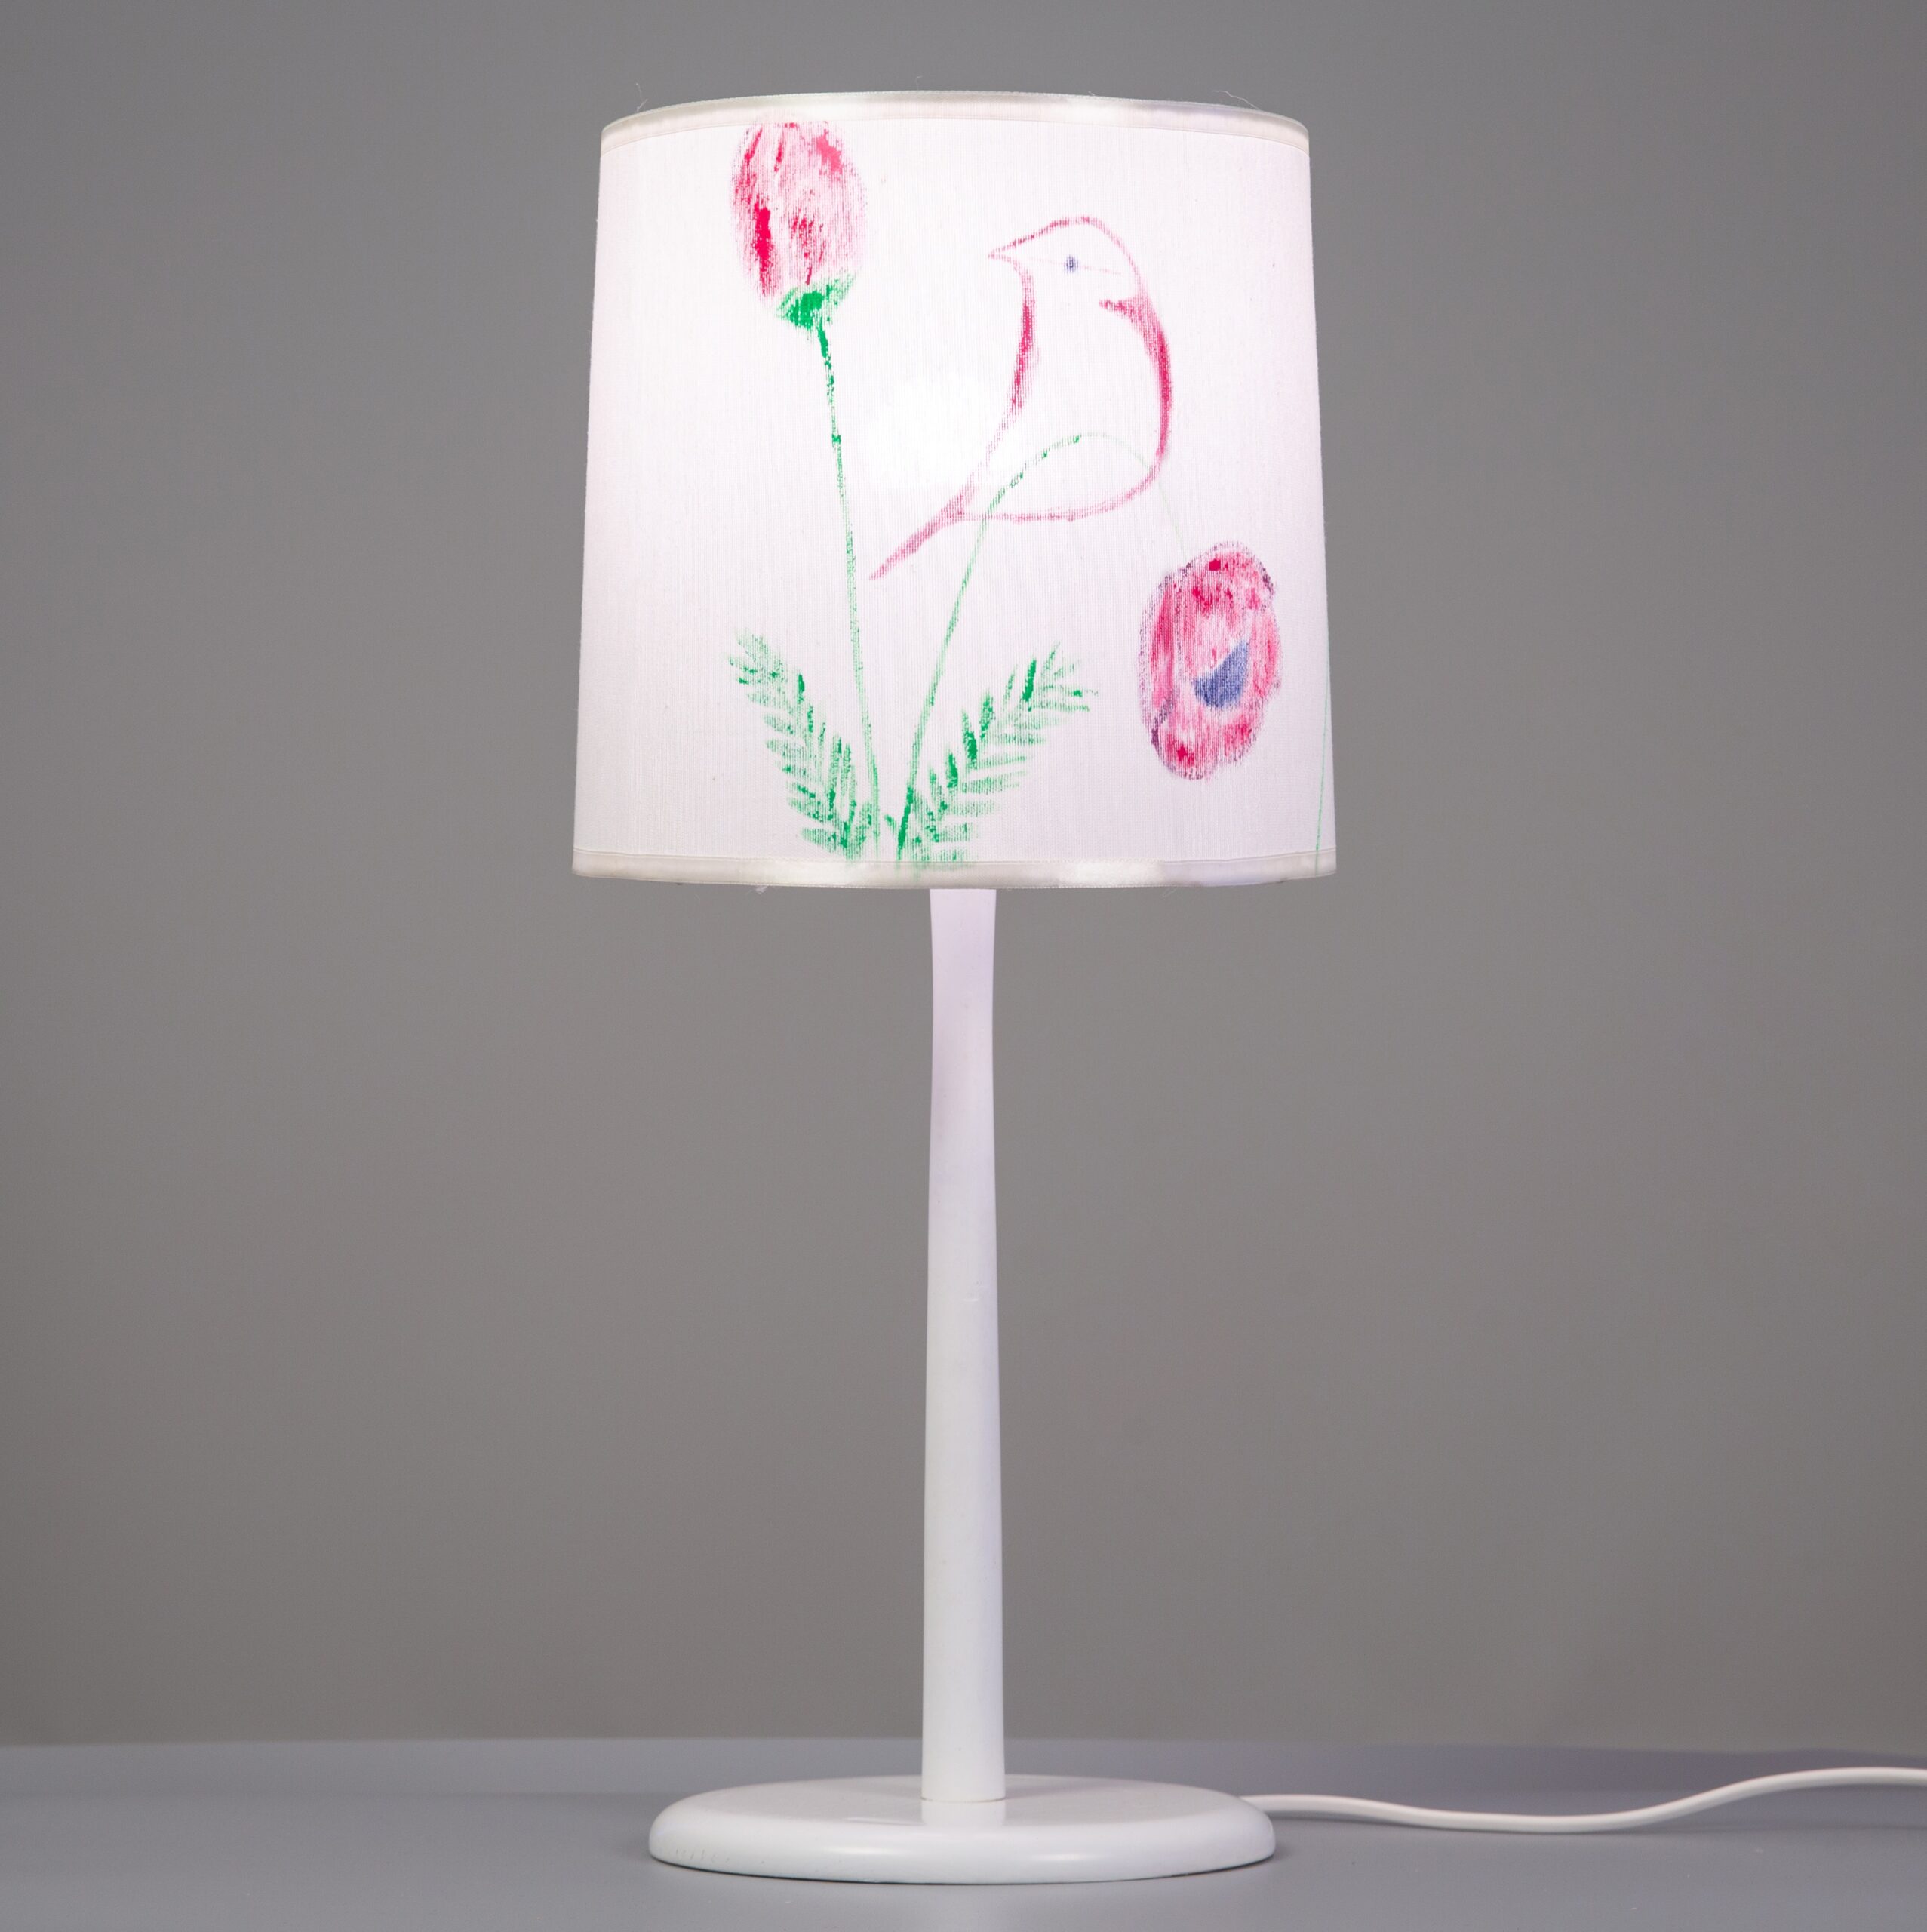 Đèn bàn gỗ chú chim mùa xuân BG006, đèn trang trí nội thất, đèn để bàn phòng ngủ